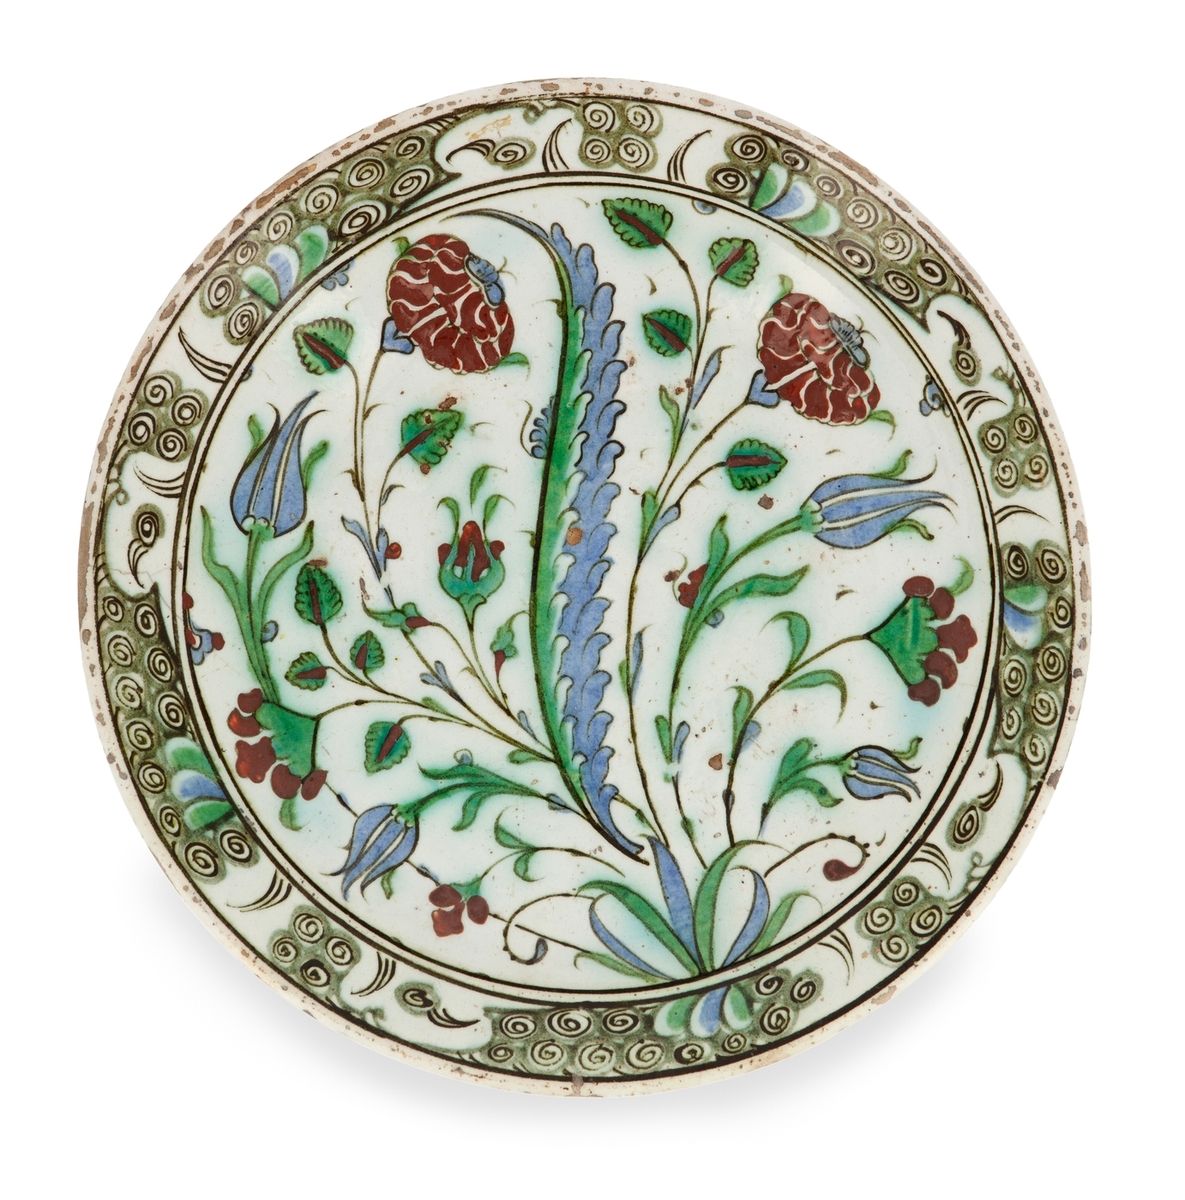 Null Tabak ottoman aux fleurs
Iznik, Turquie, XVIIe siècle
Plat en céramique sil&hellip;